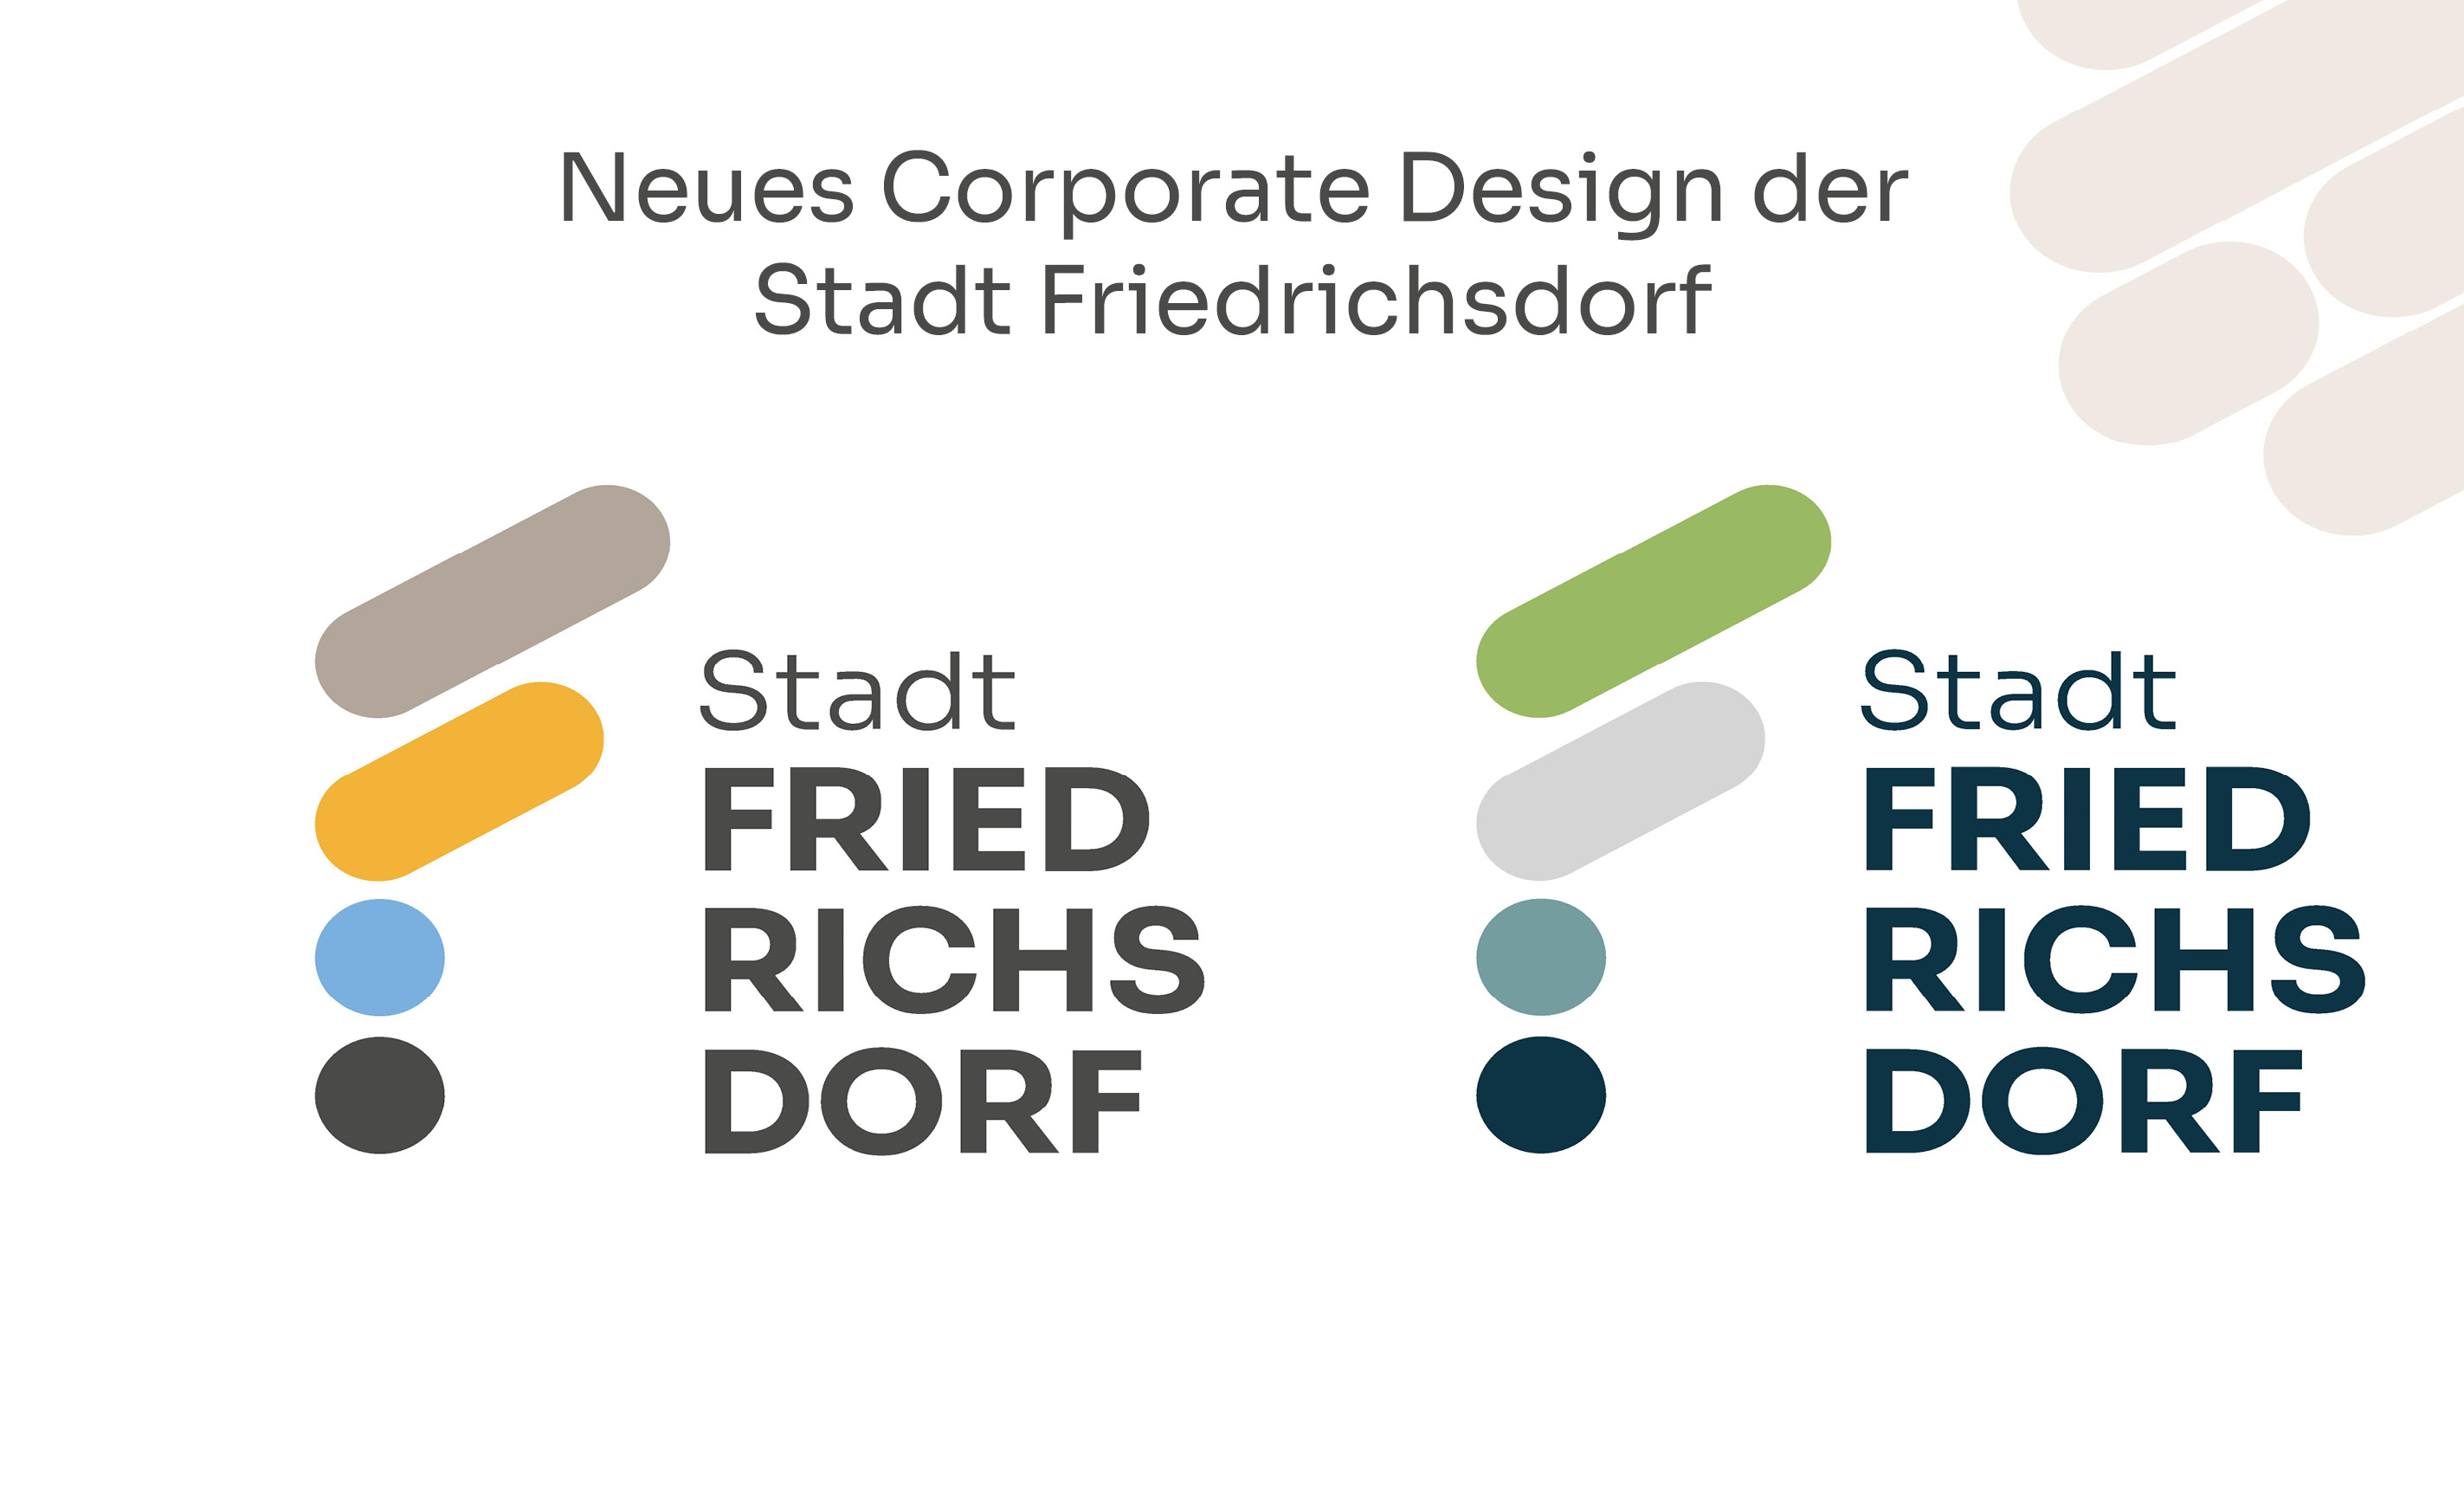 Neues Corporate Design der Stadt Friedrichsdorf - weitere Informationen >>>